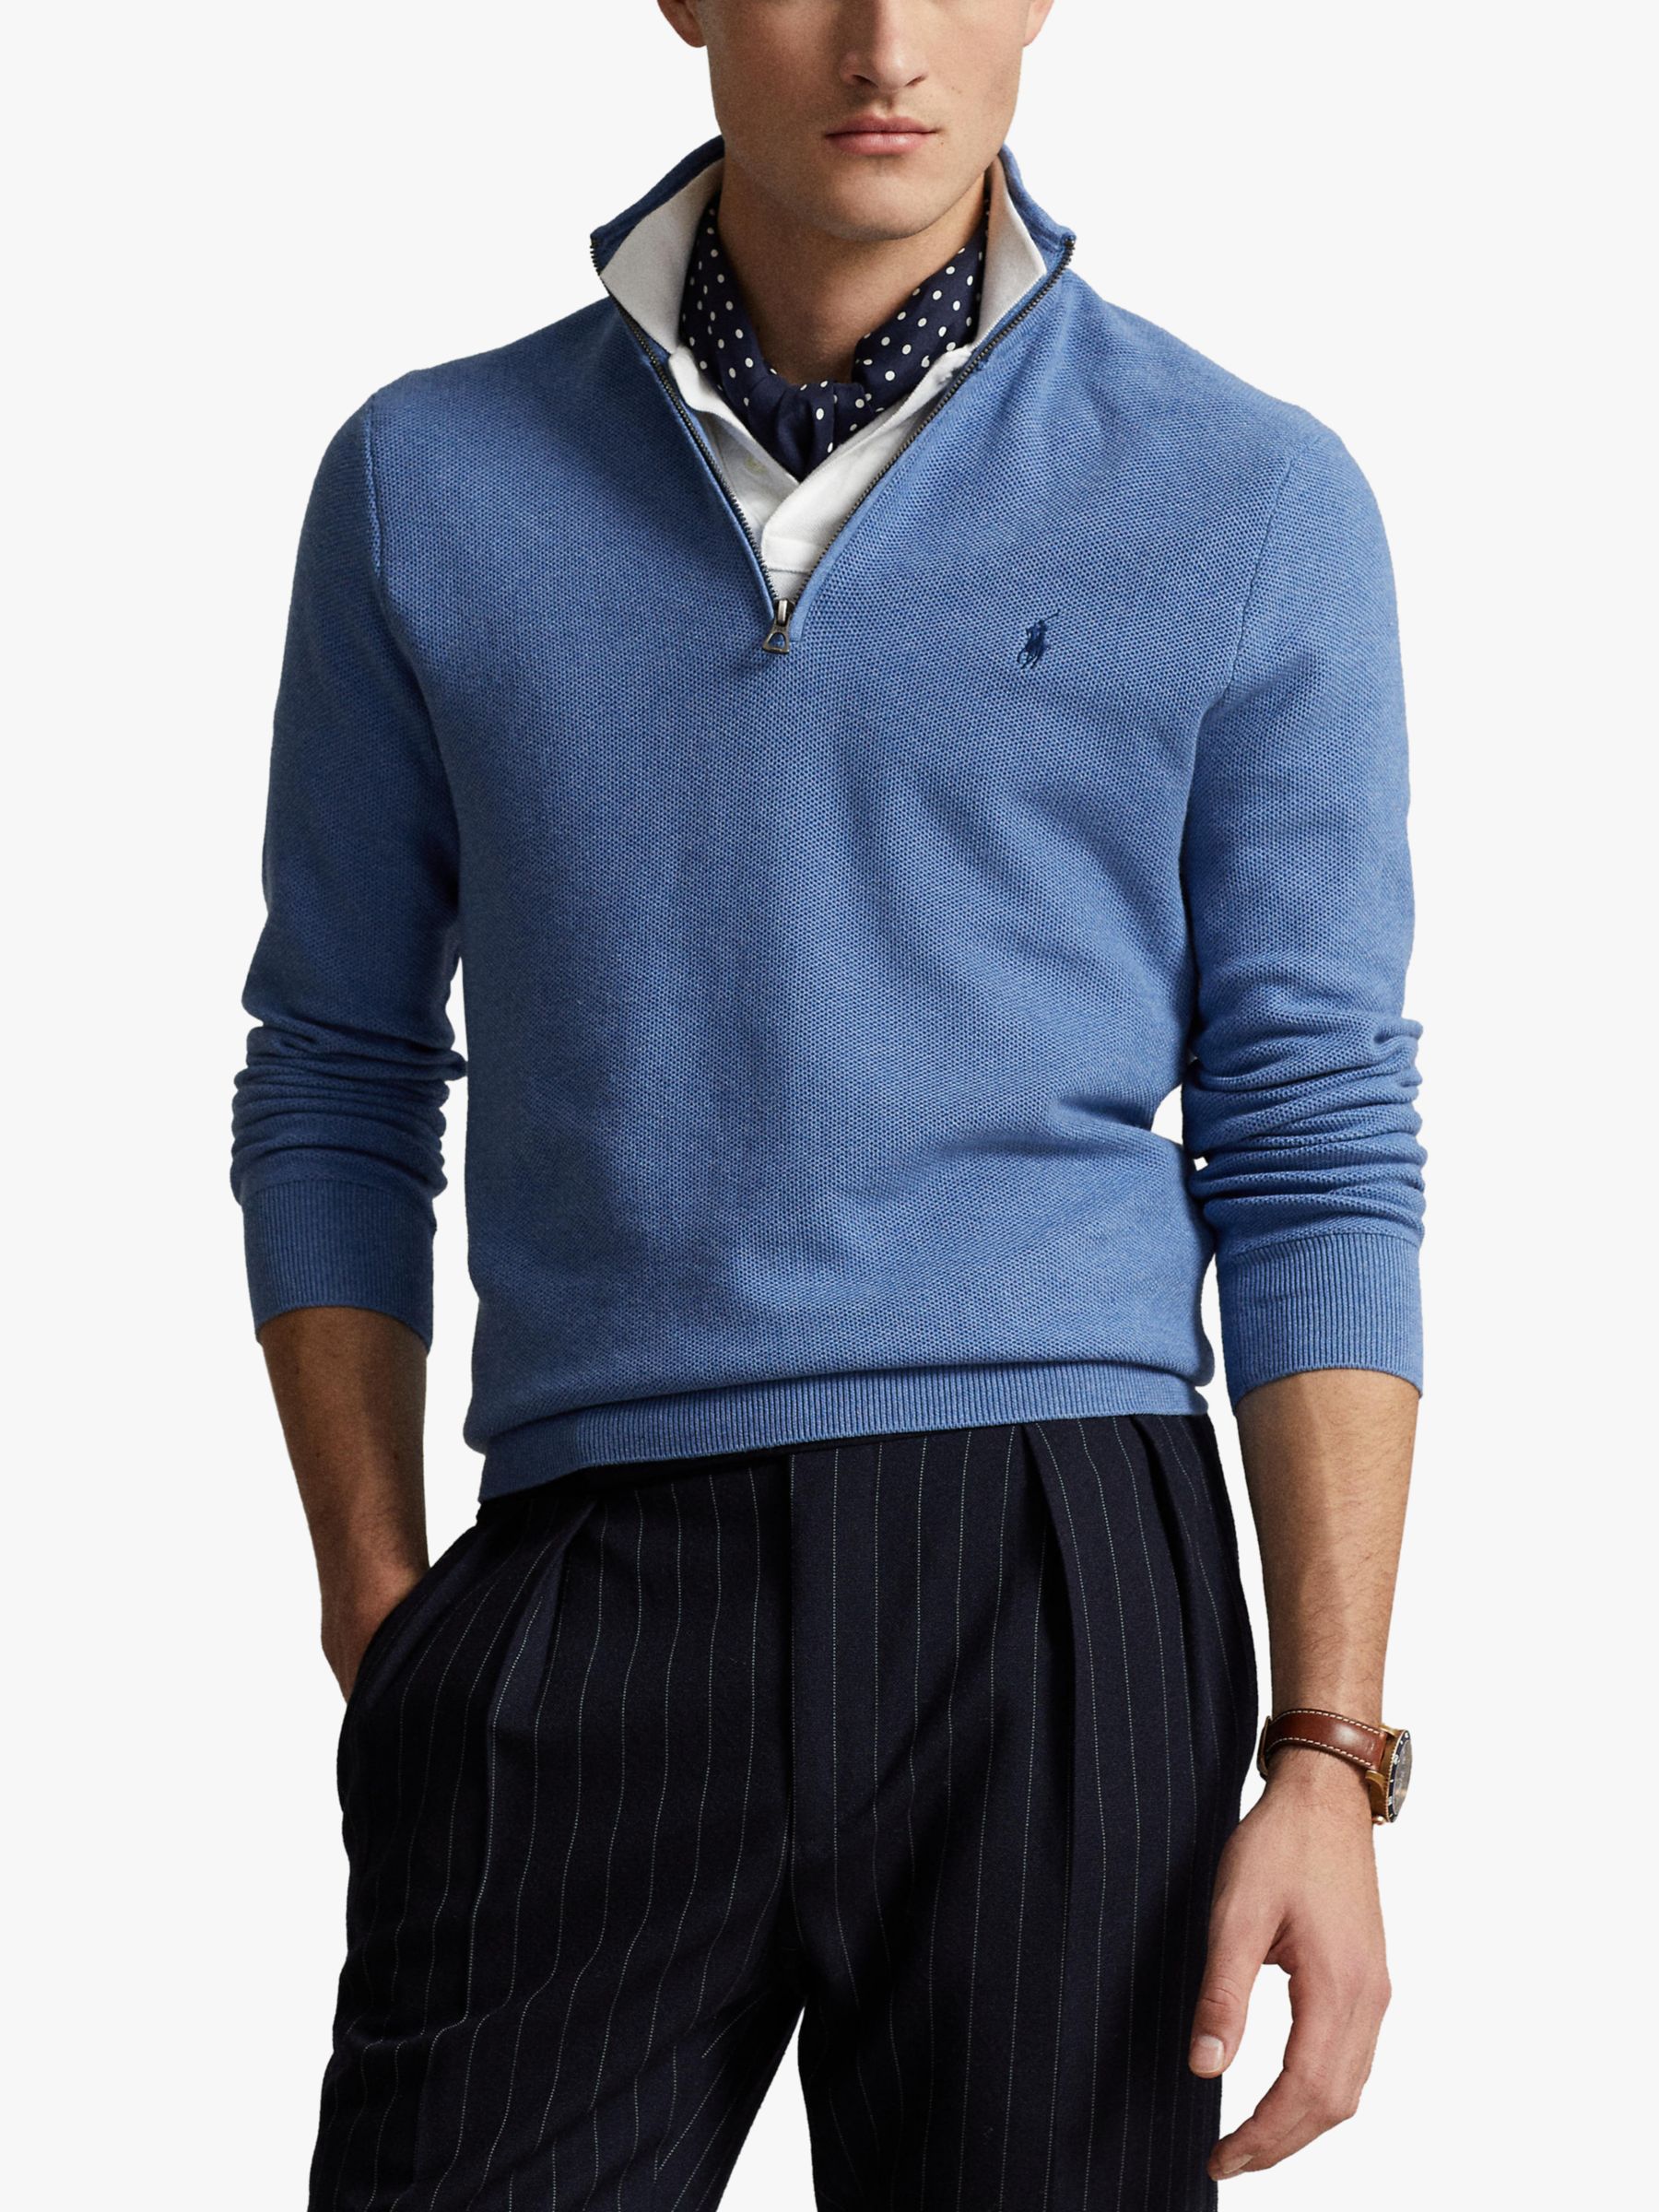 Polo Ralph Lauren Long Sleeve Quarter Zip Jumper, Blue, S